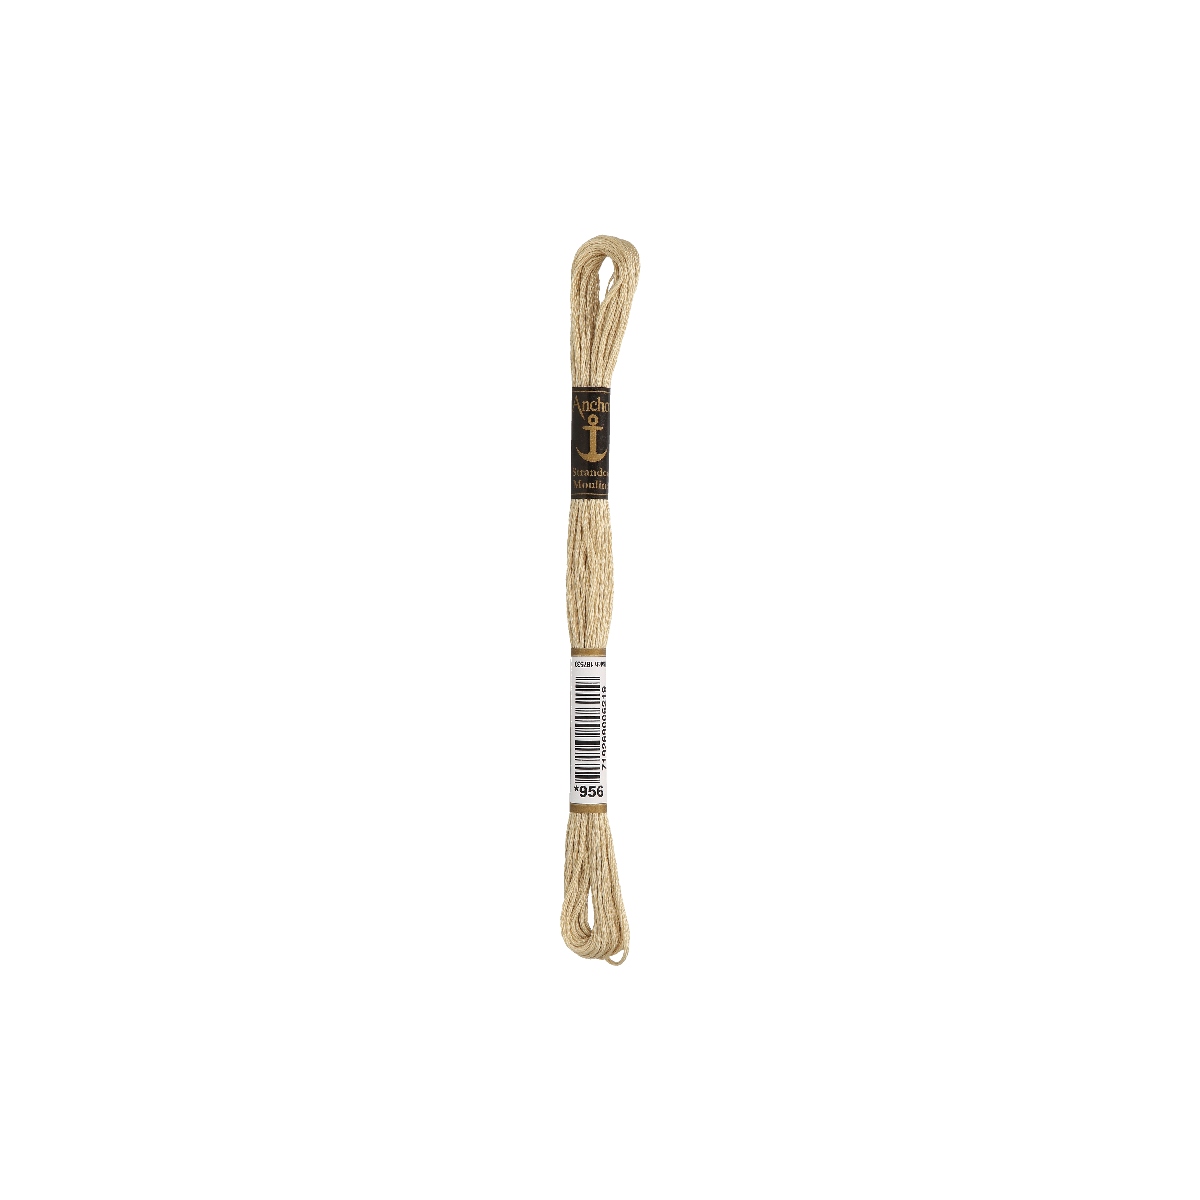 Anchor Sticktwist 8m, bastone, cotone, colore 956, 6 fili